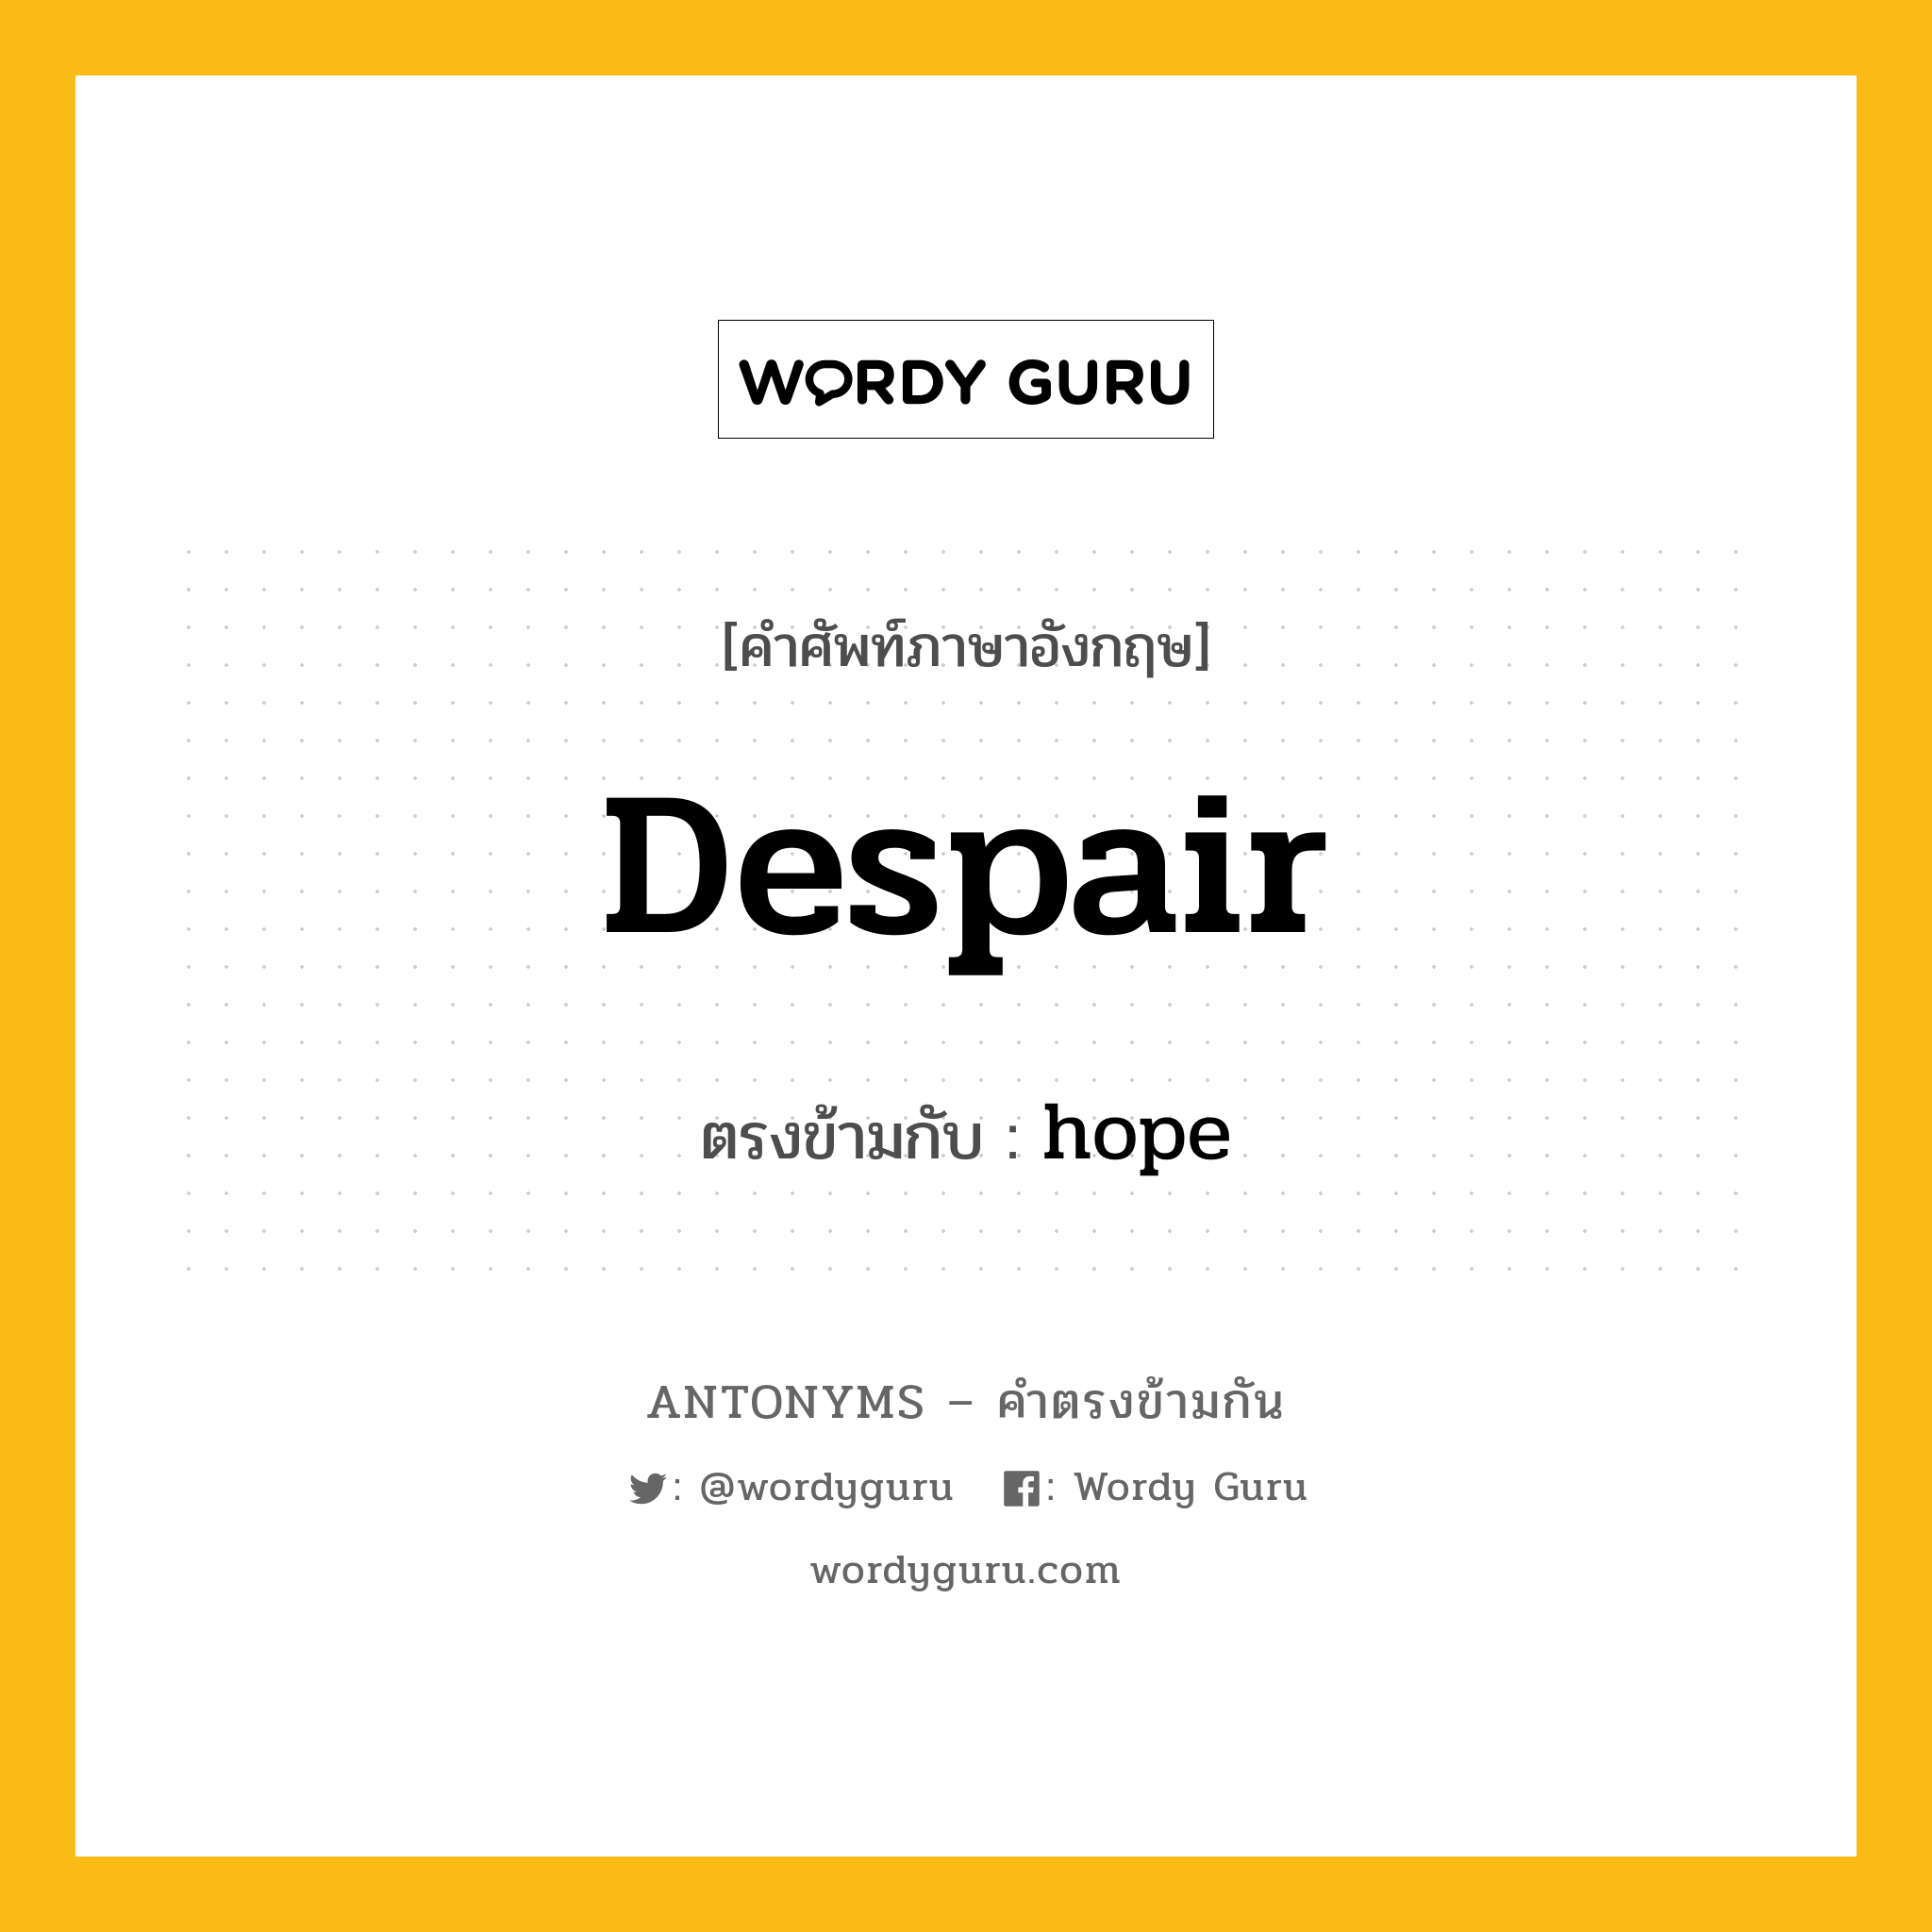 despair เป็นคำตรงข้ามกับคำไหนบ้าง?, คำศัพท์ภาษาอังกฤษ despair ตรงข้ามกับ hope หมวด hope